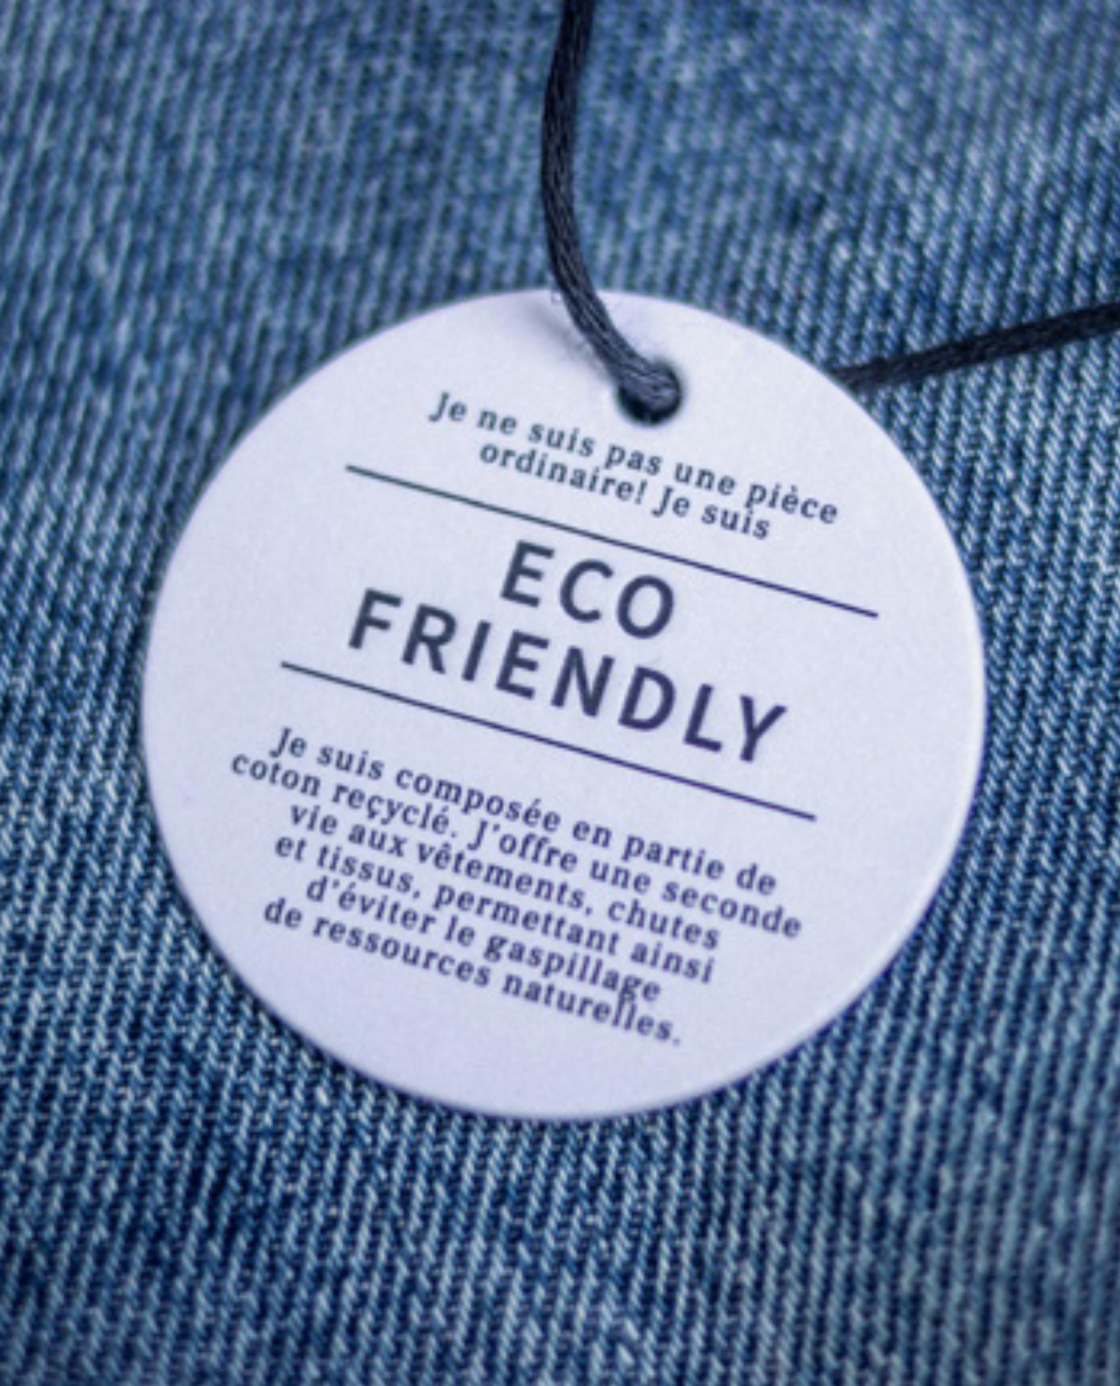 Une étiquette de jeans stipulant que le tissu est Eco Friendly